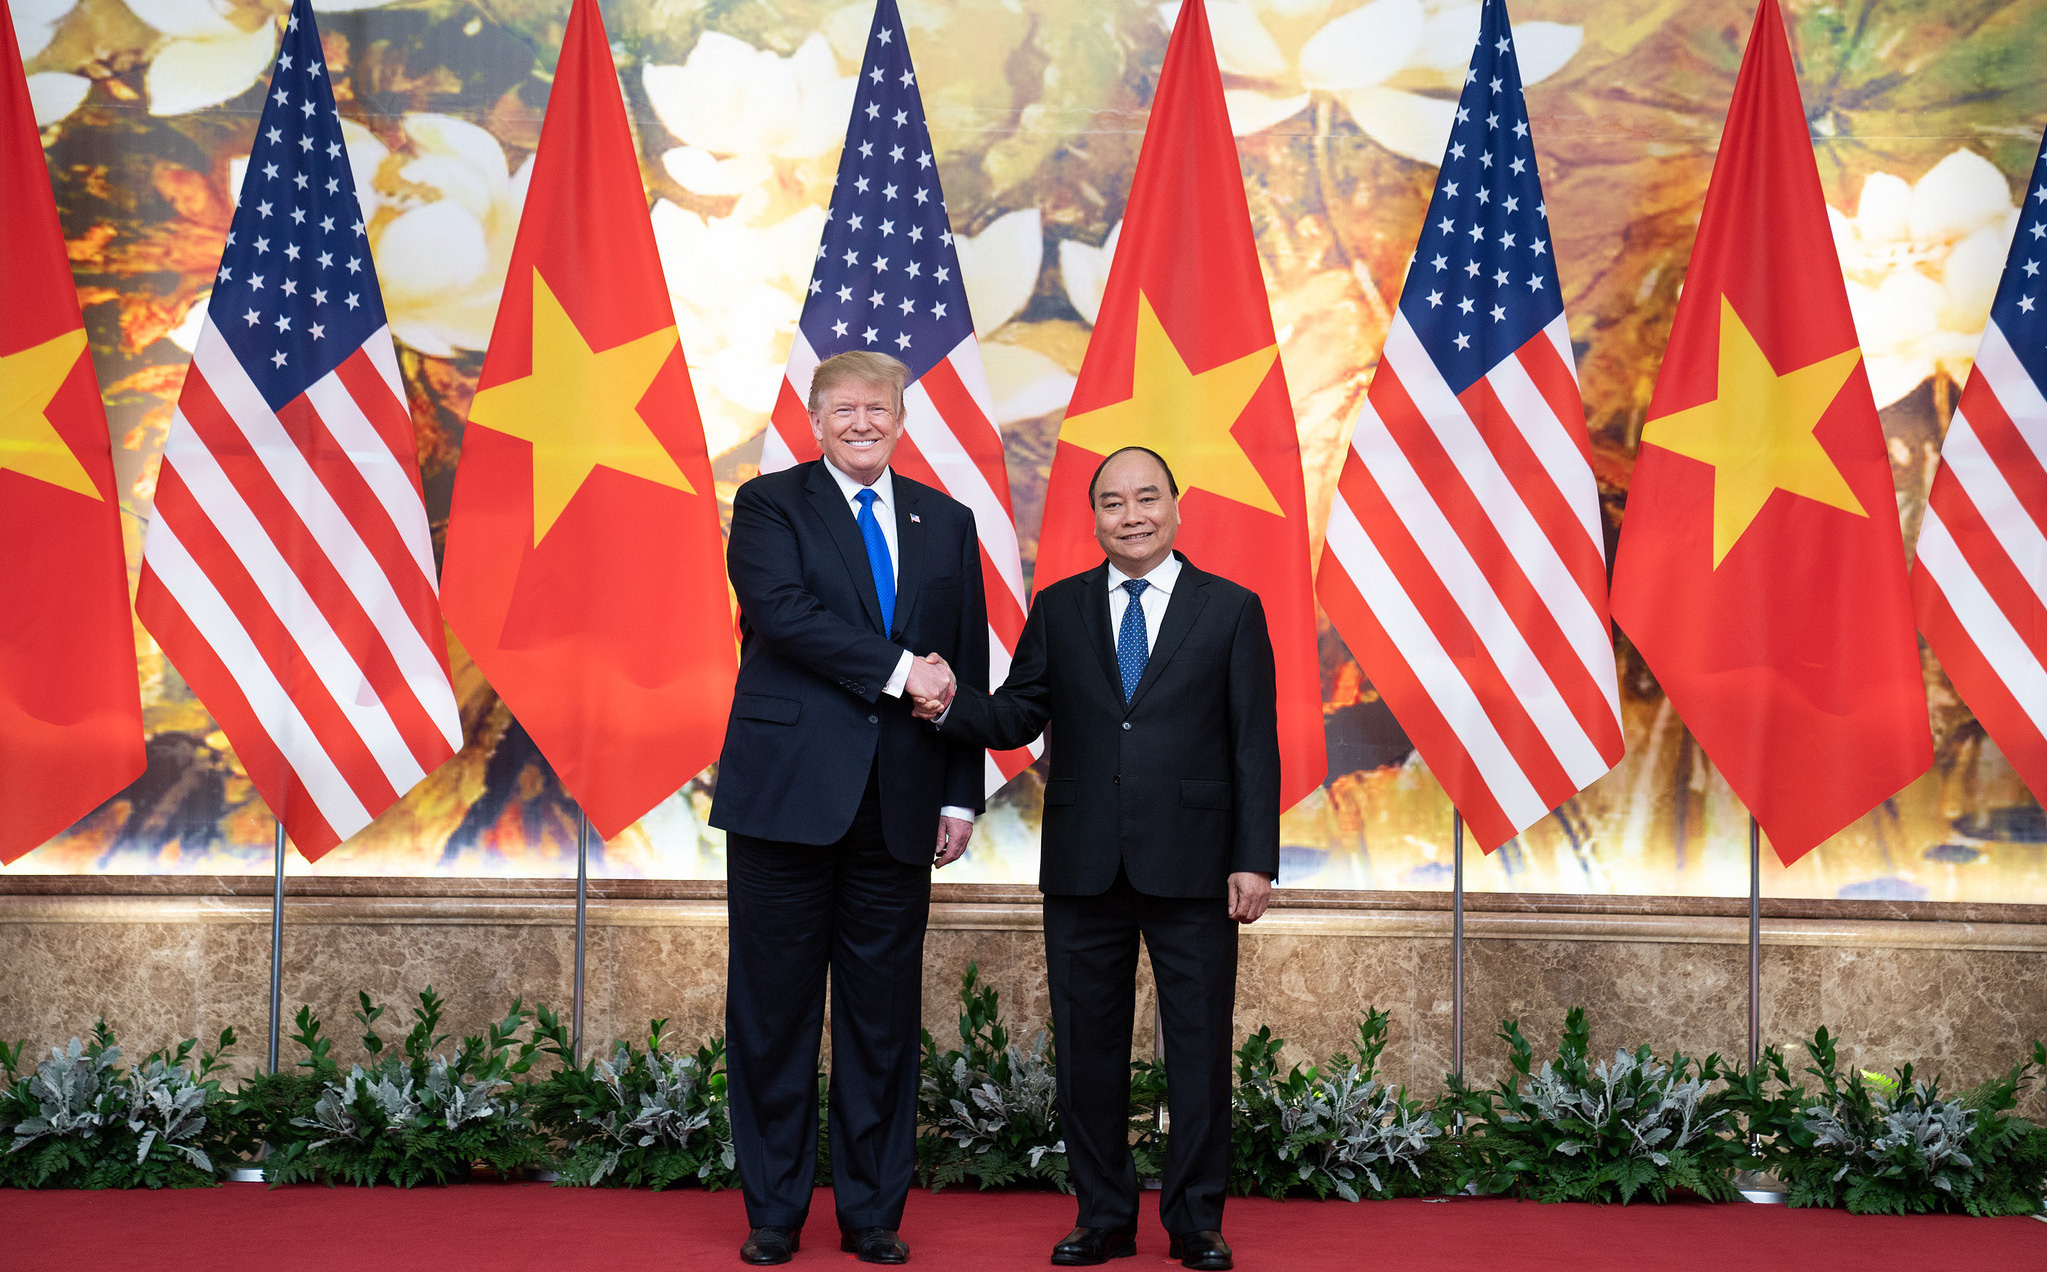 Thủ tướng Nguyễn Xuân Phúc điện đàm với Tổng thống Mỹ: Ông Trump cảm ơn Việt Nam hỗ trợ, ngỏ ý tặng máy thở